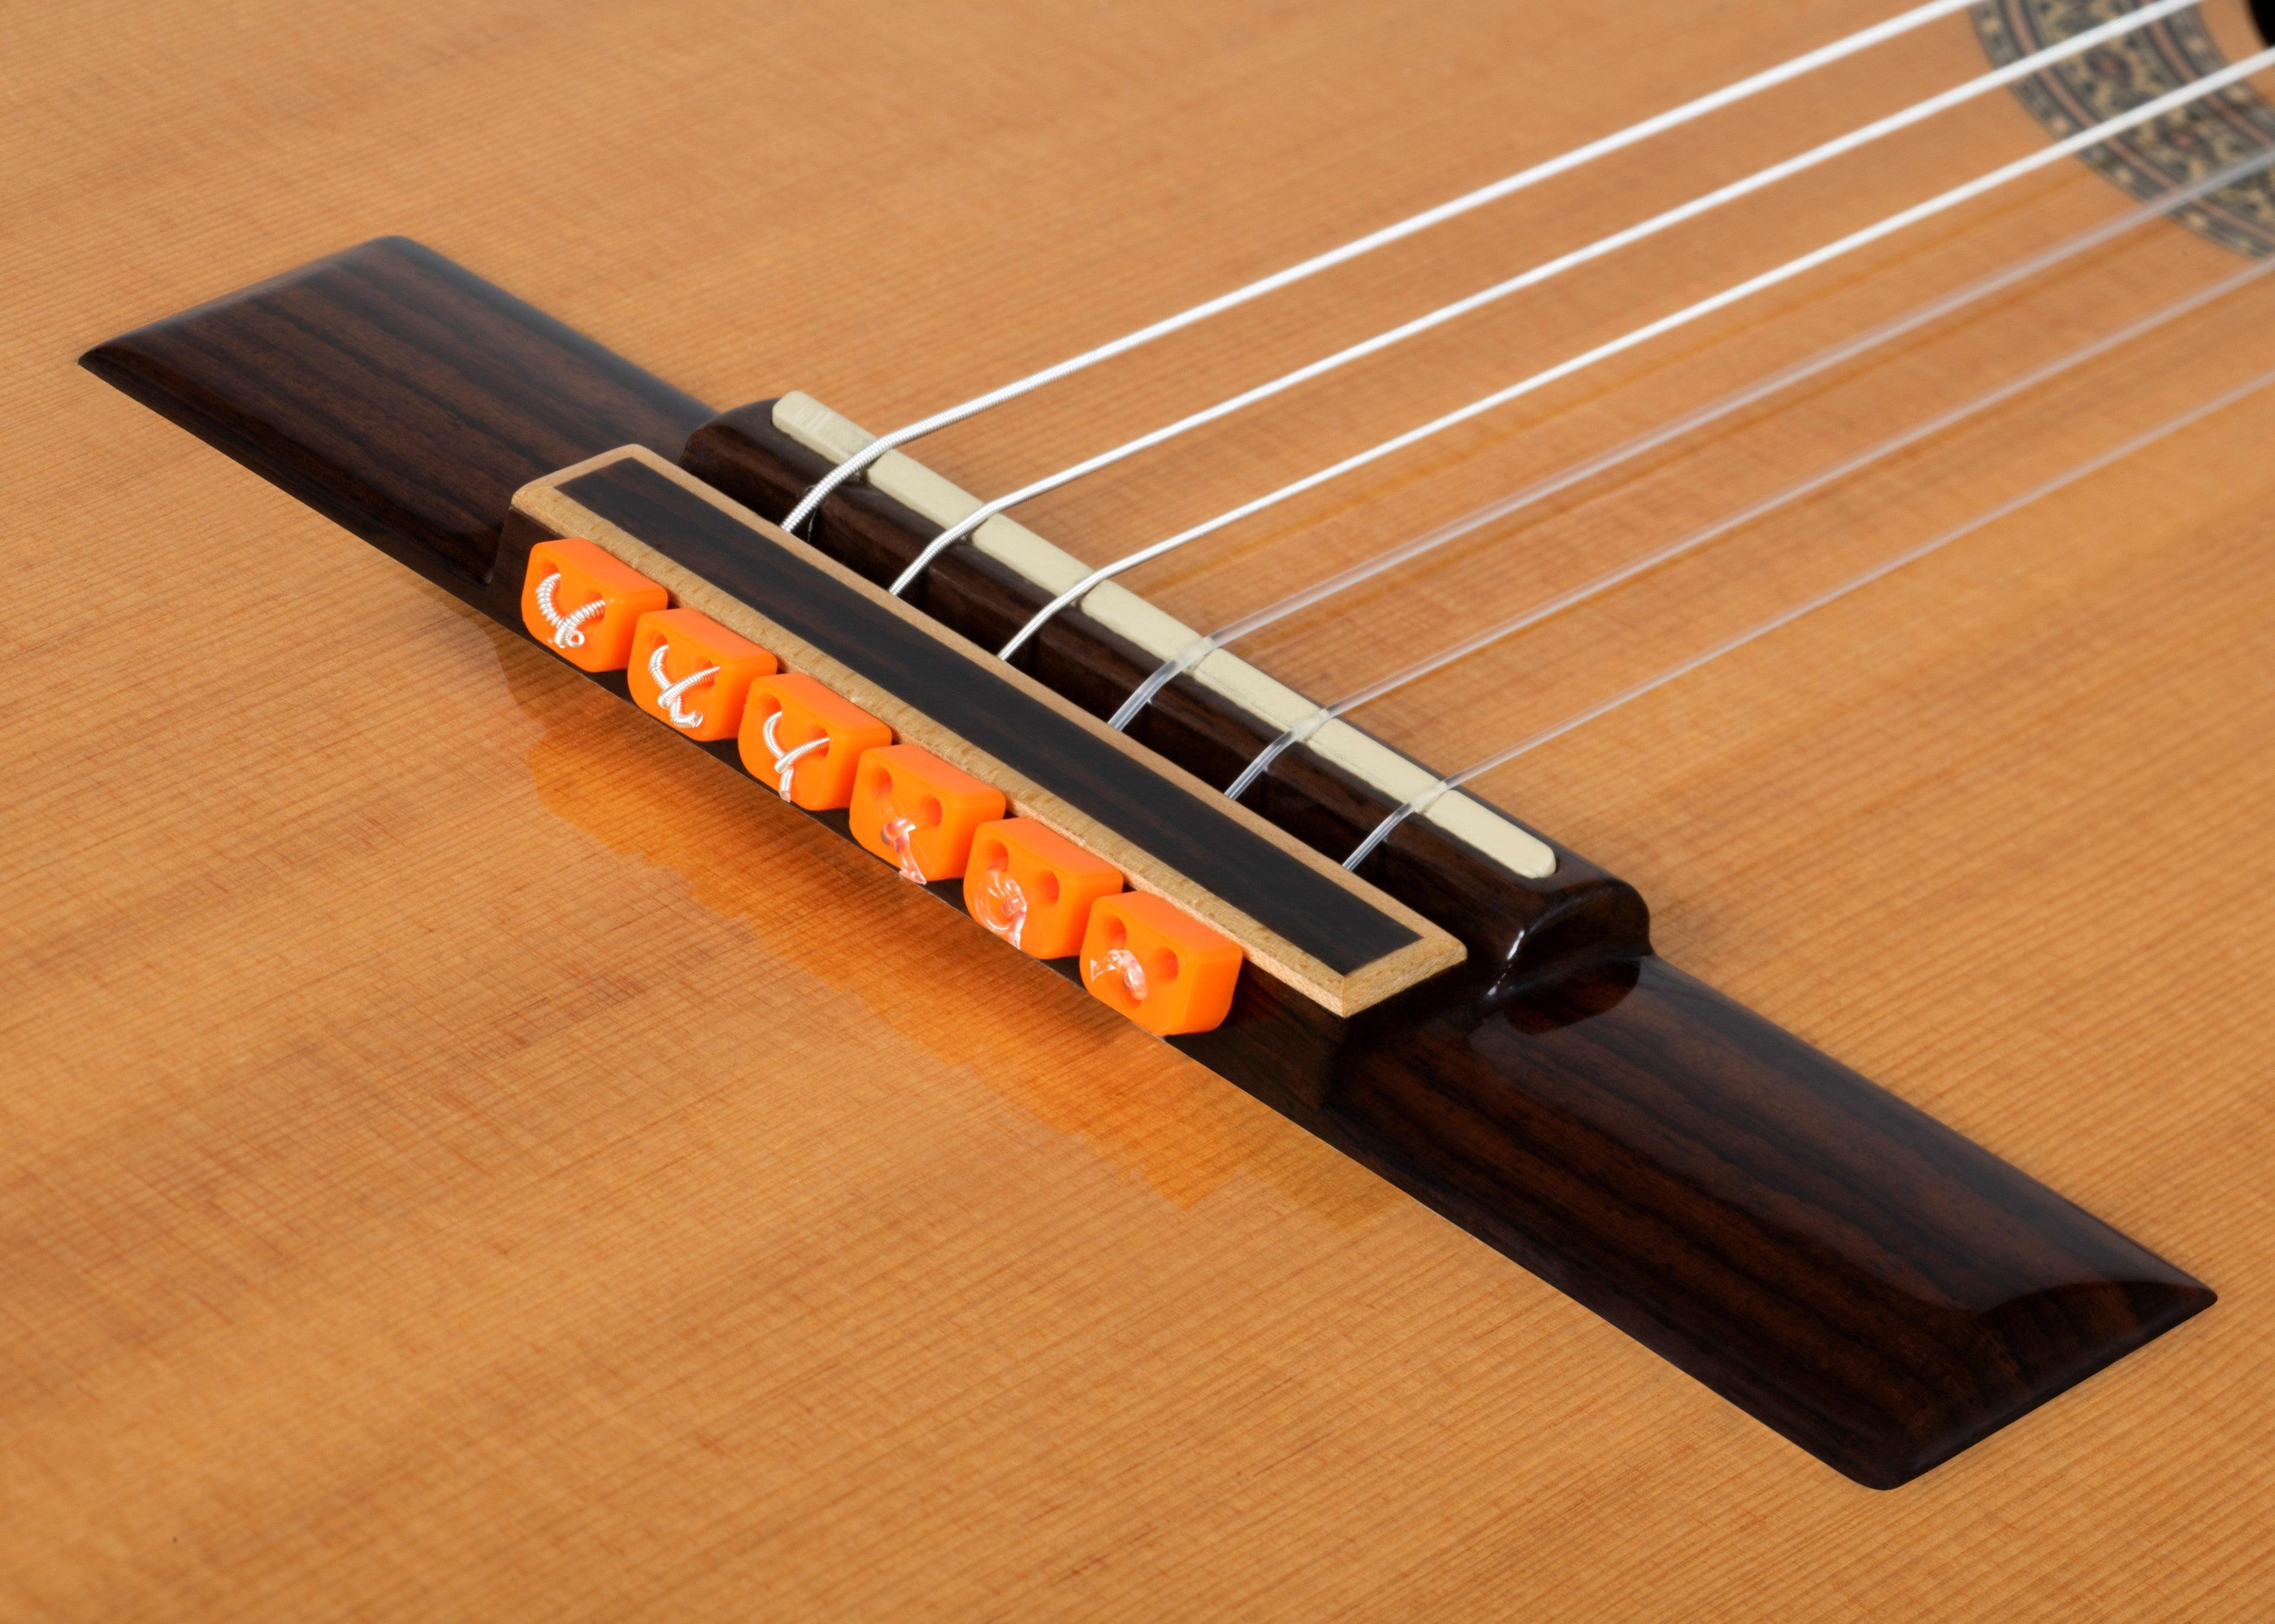 Alba Guitar Beads Brown Gloss for Classical Guitar Flamenco Guitar Acoustic  Nylon Bridge String Tie Blocks